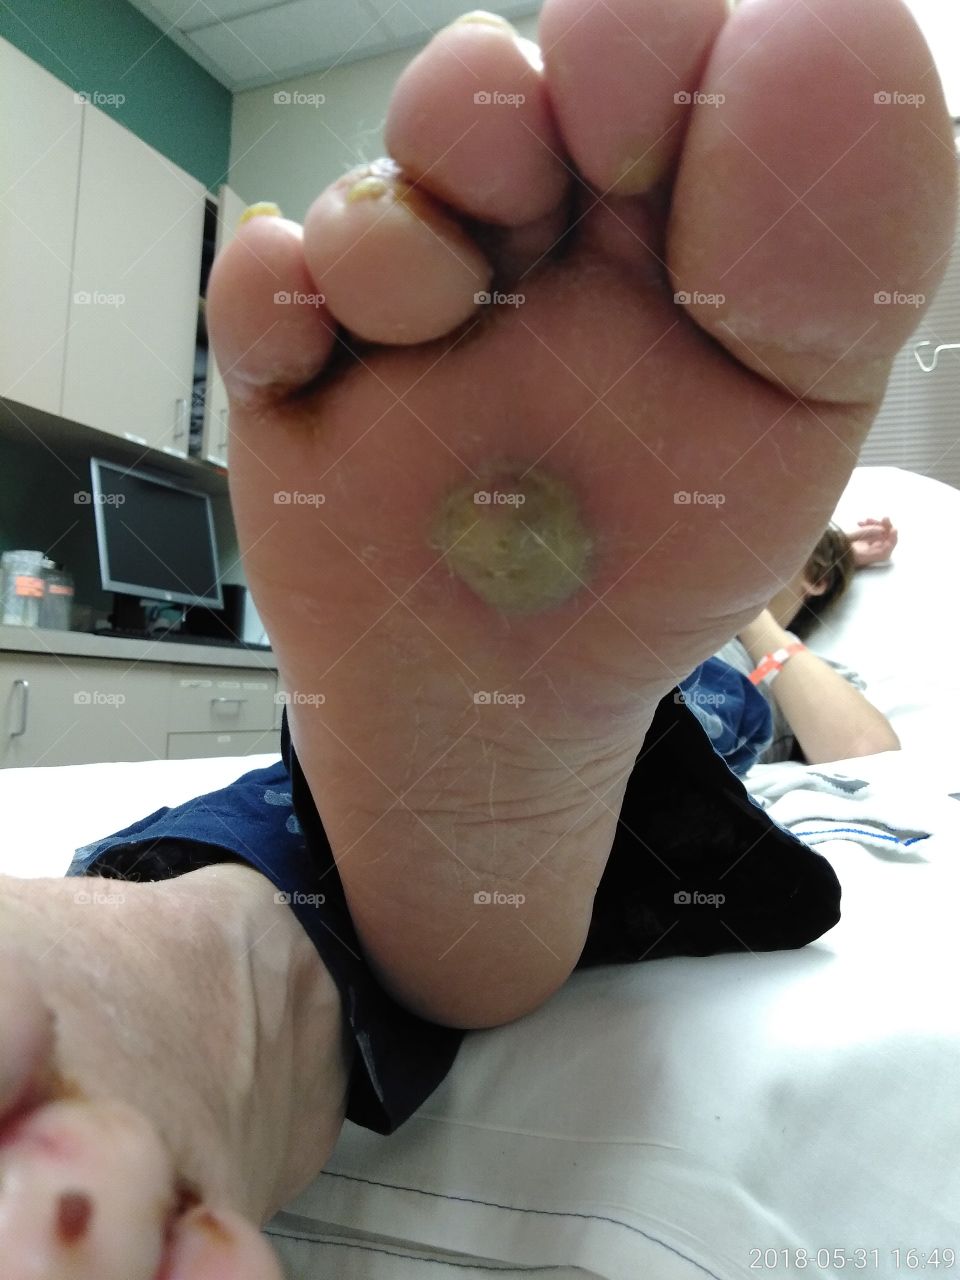 severe blister on foot